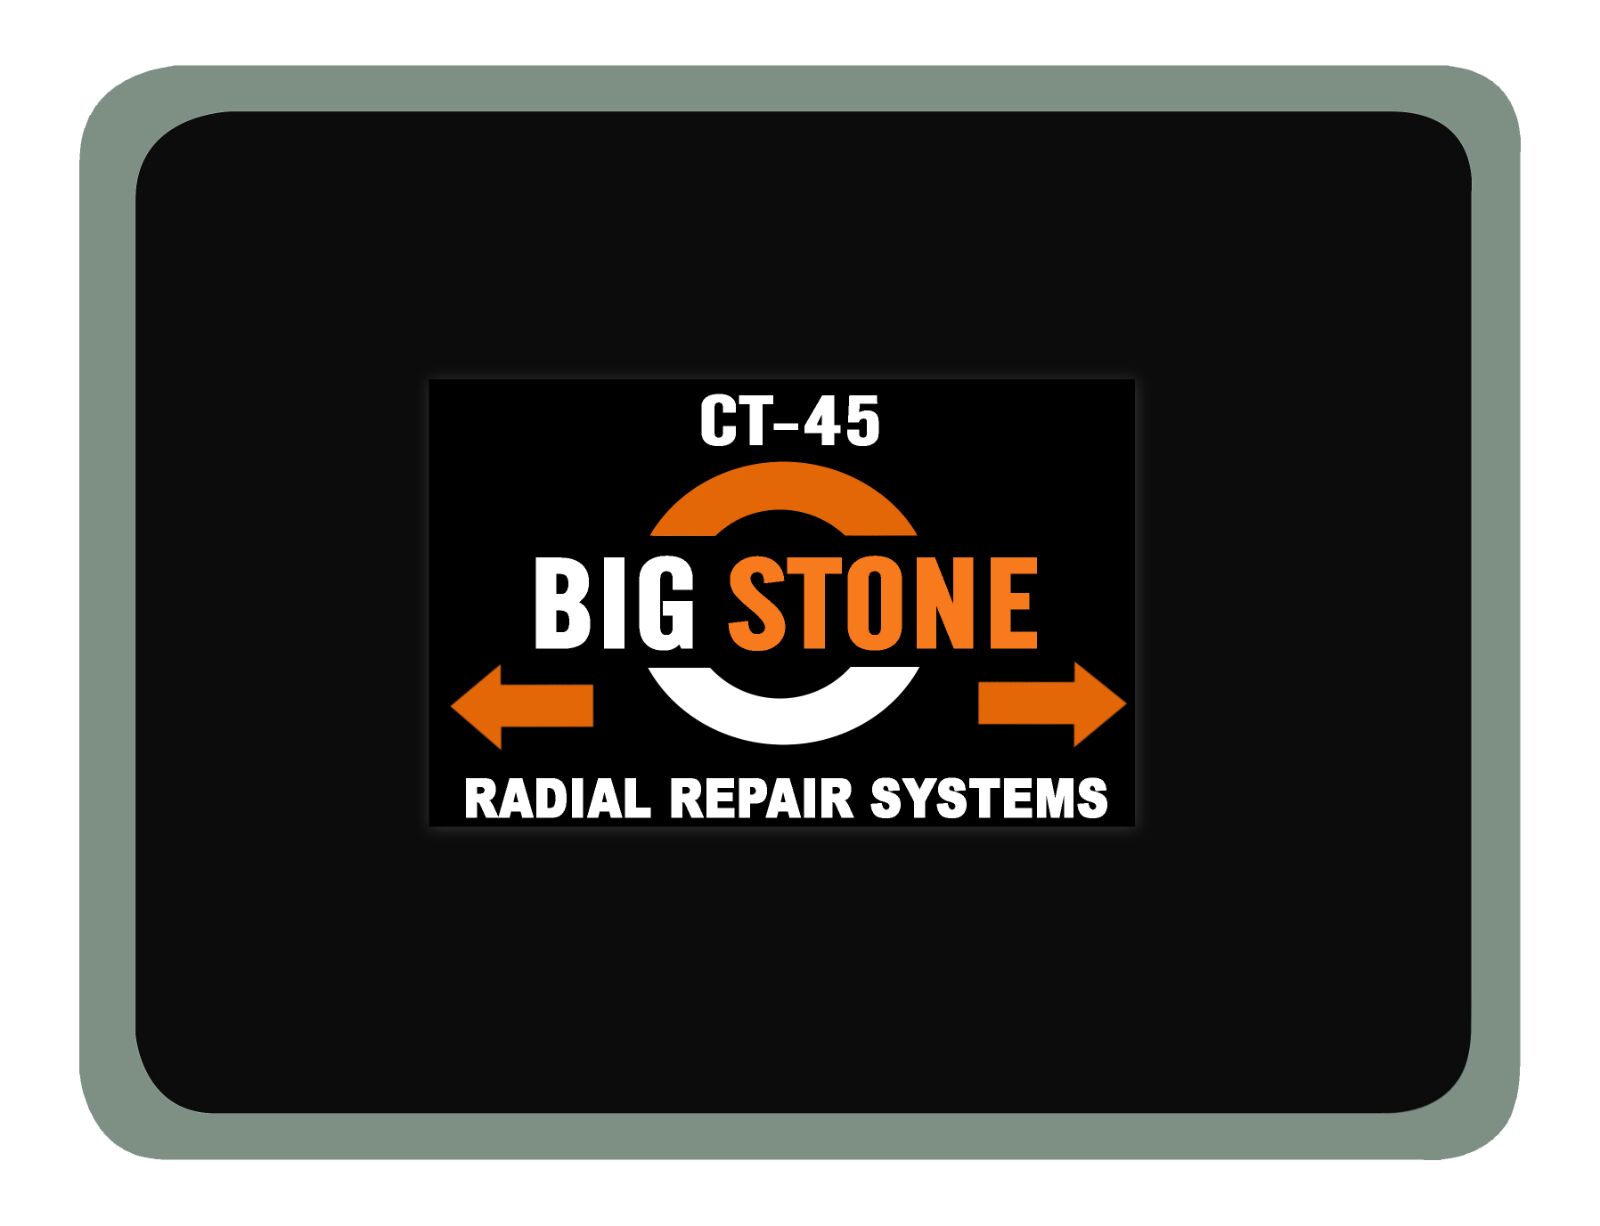 Radial repairs system ct-45